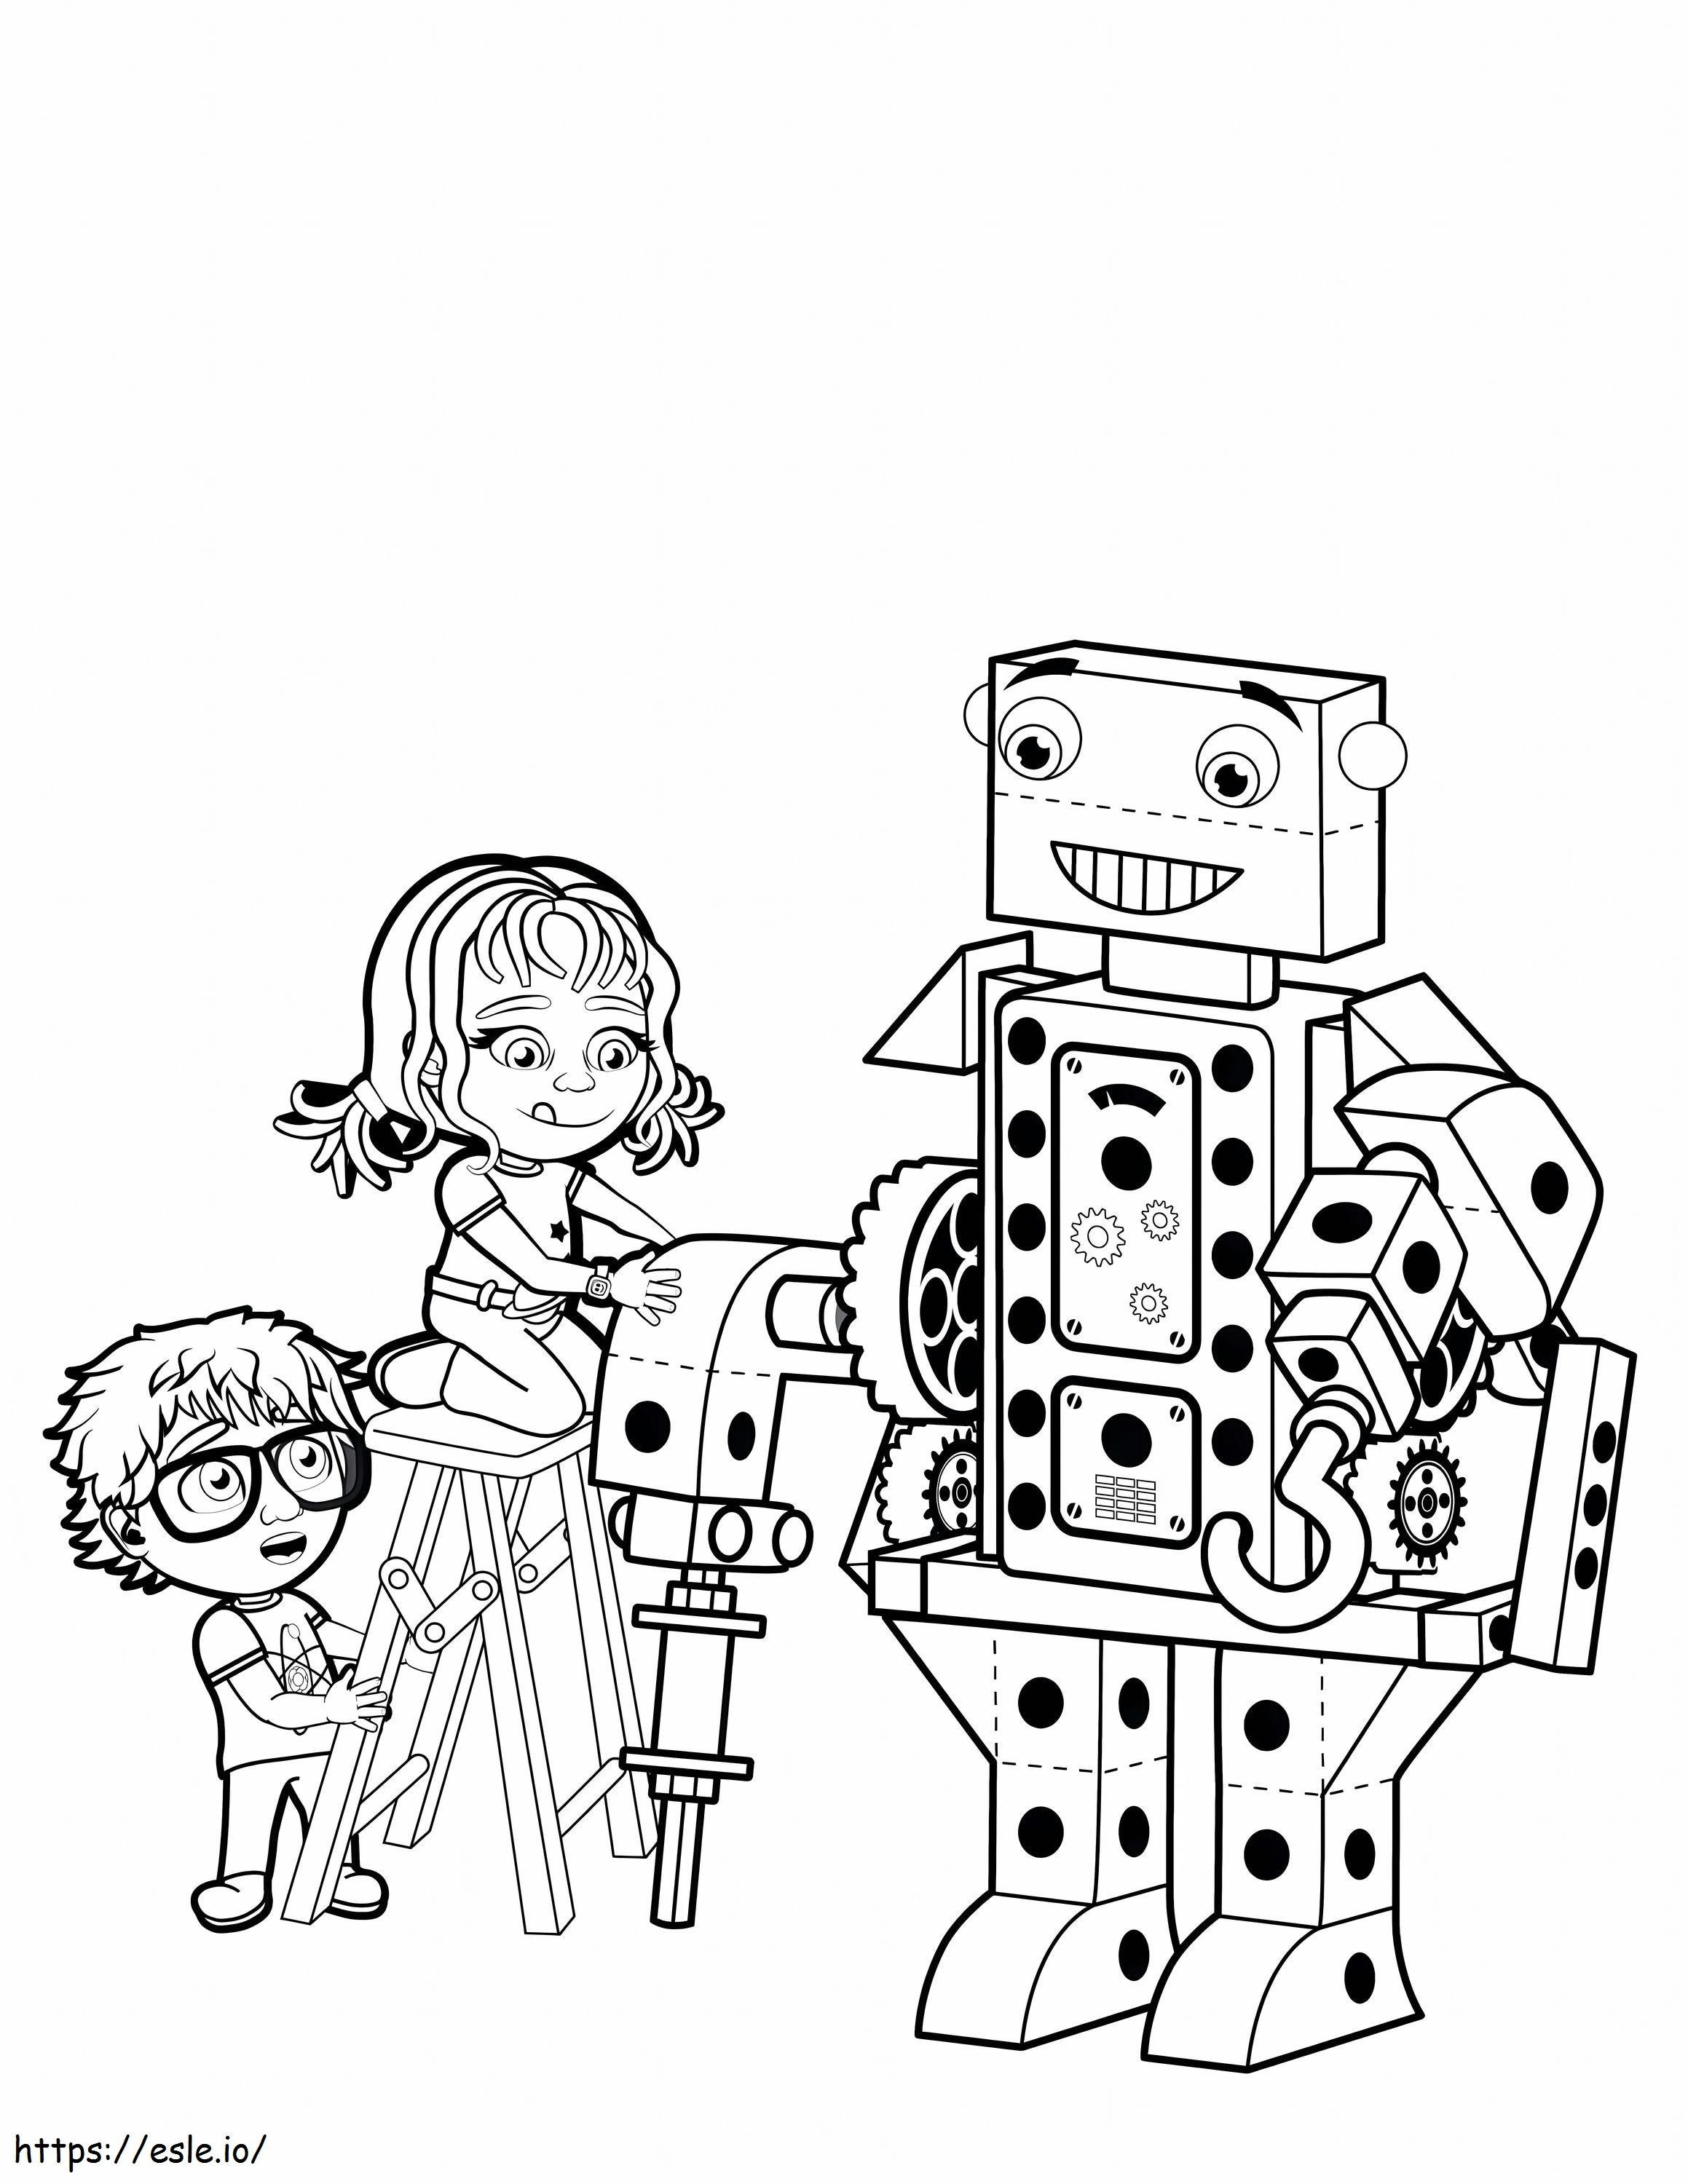 Erster Bau von Robotern für Kinder ausmalbilder